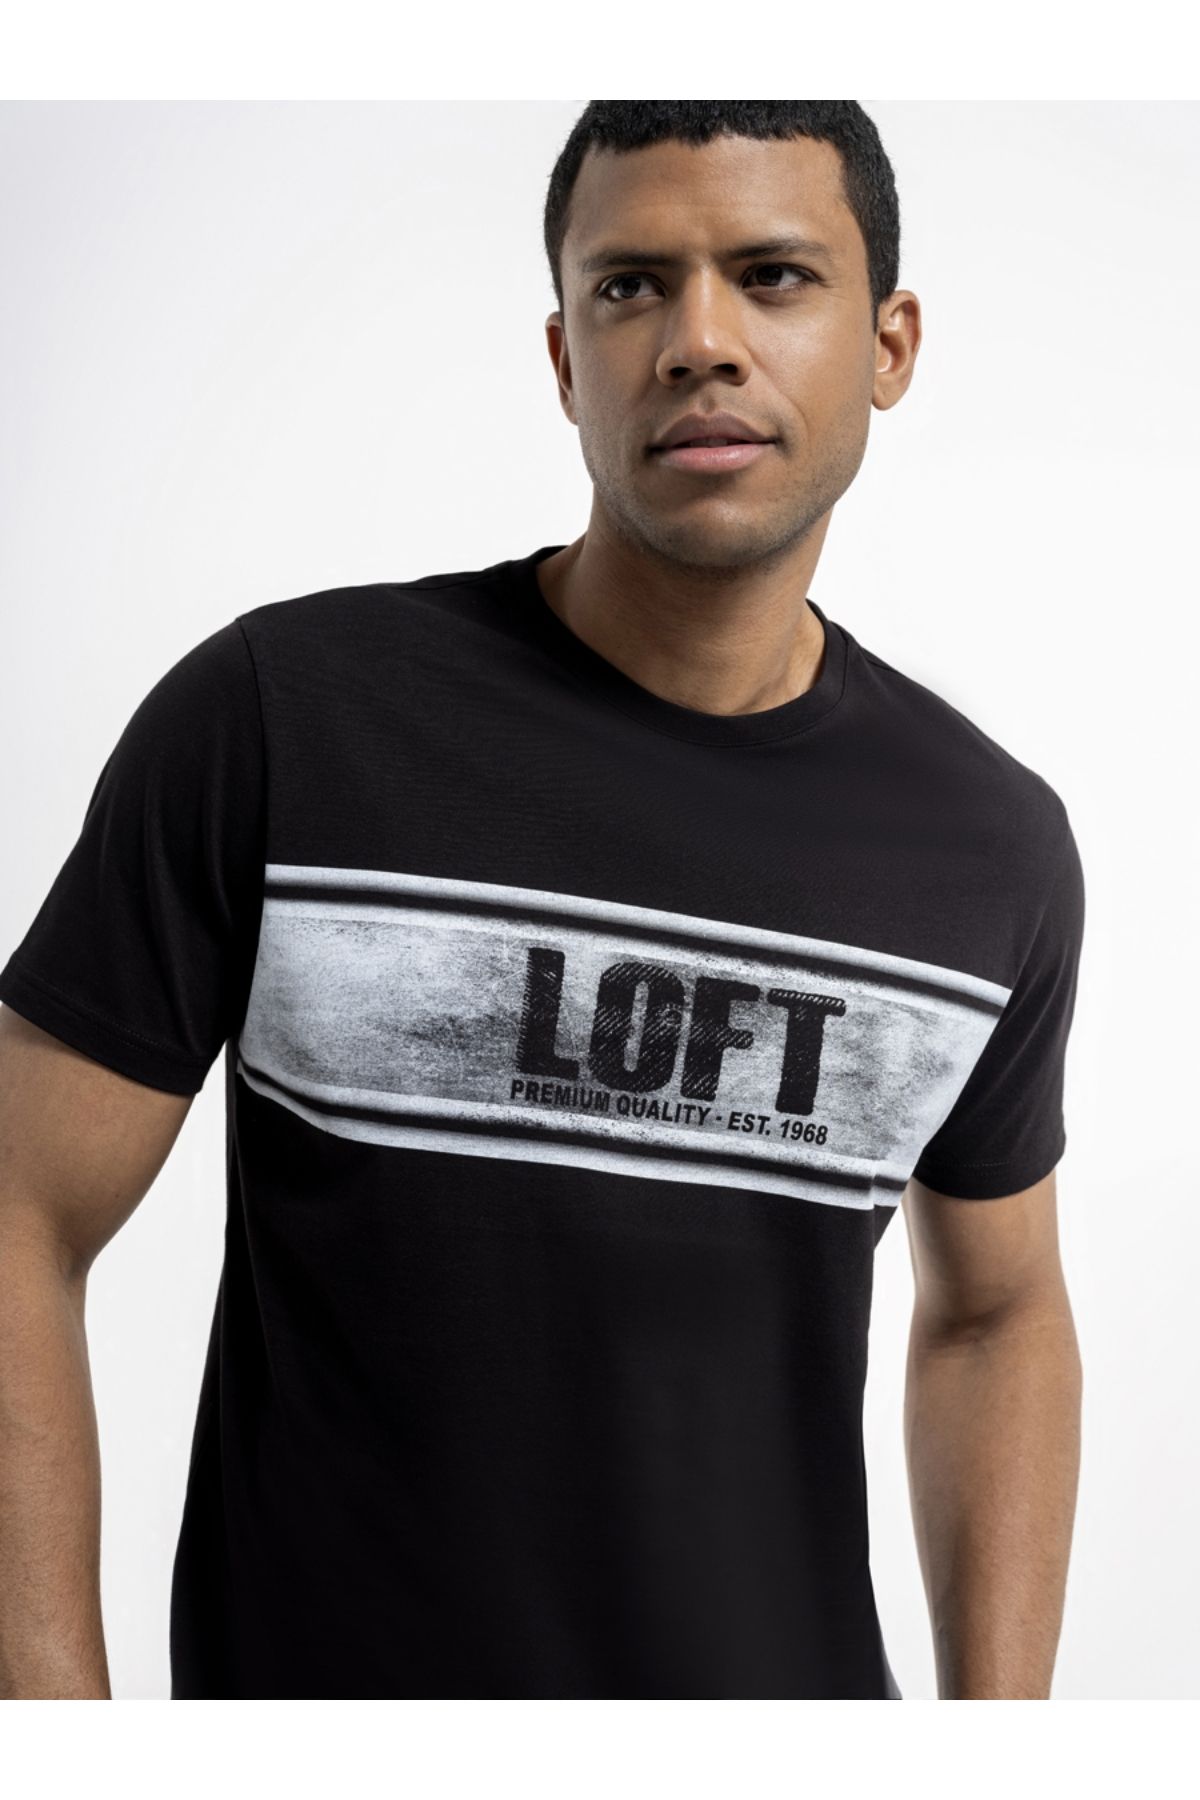 Loft شرت سیاه مردانه LF2036418